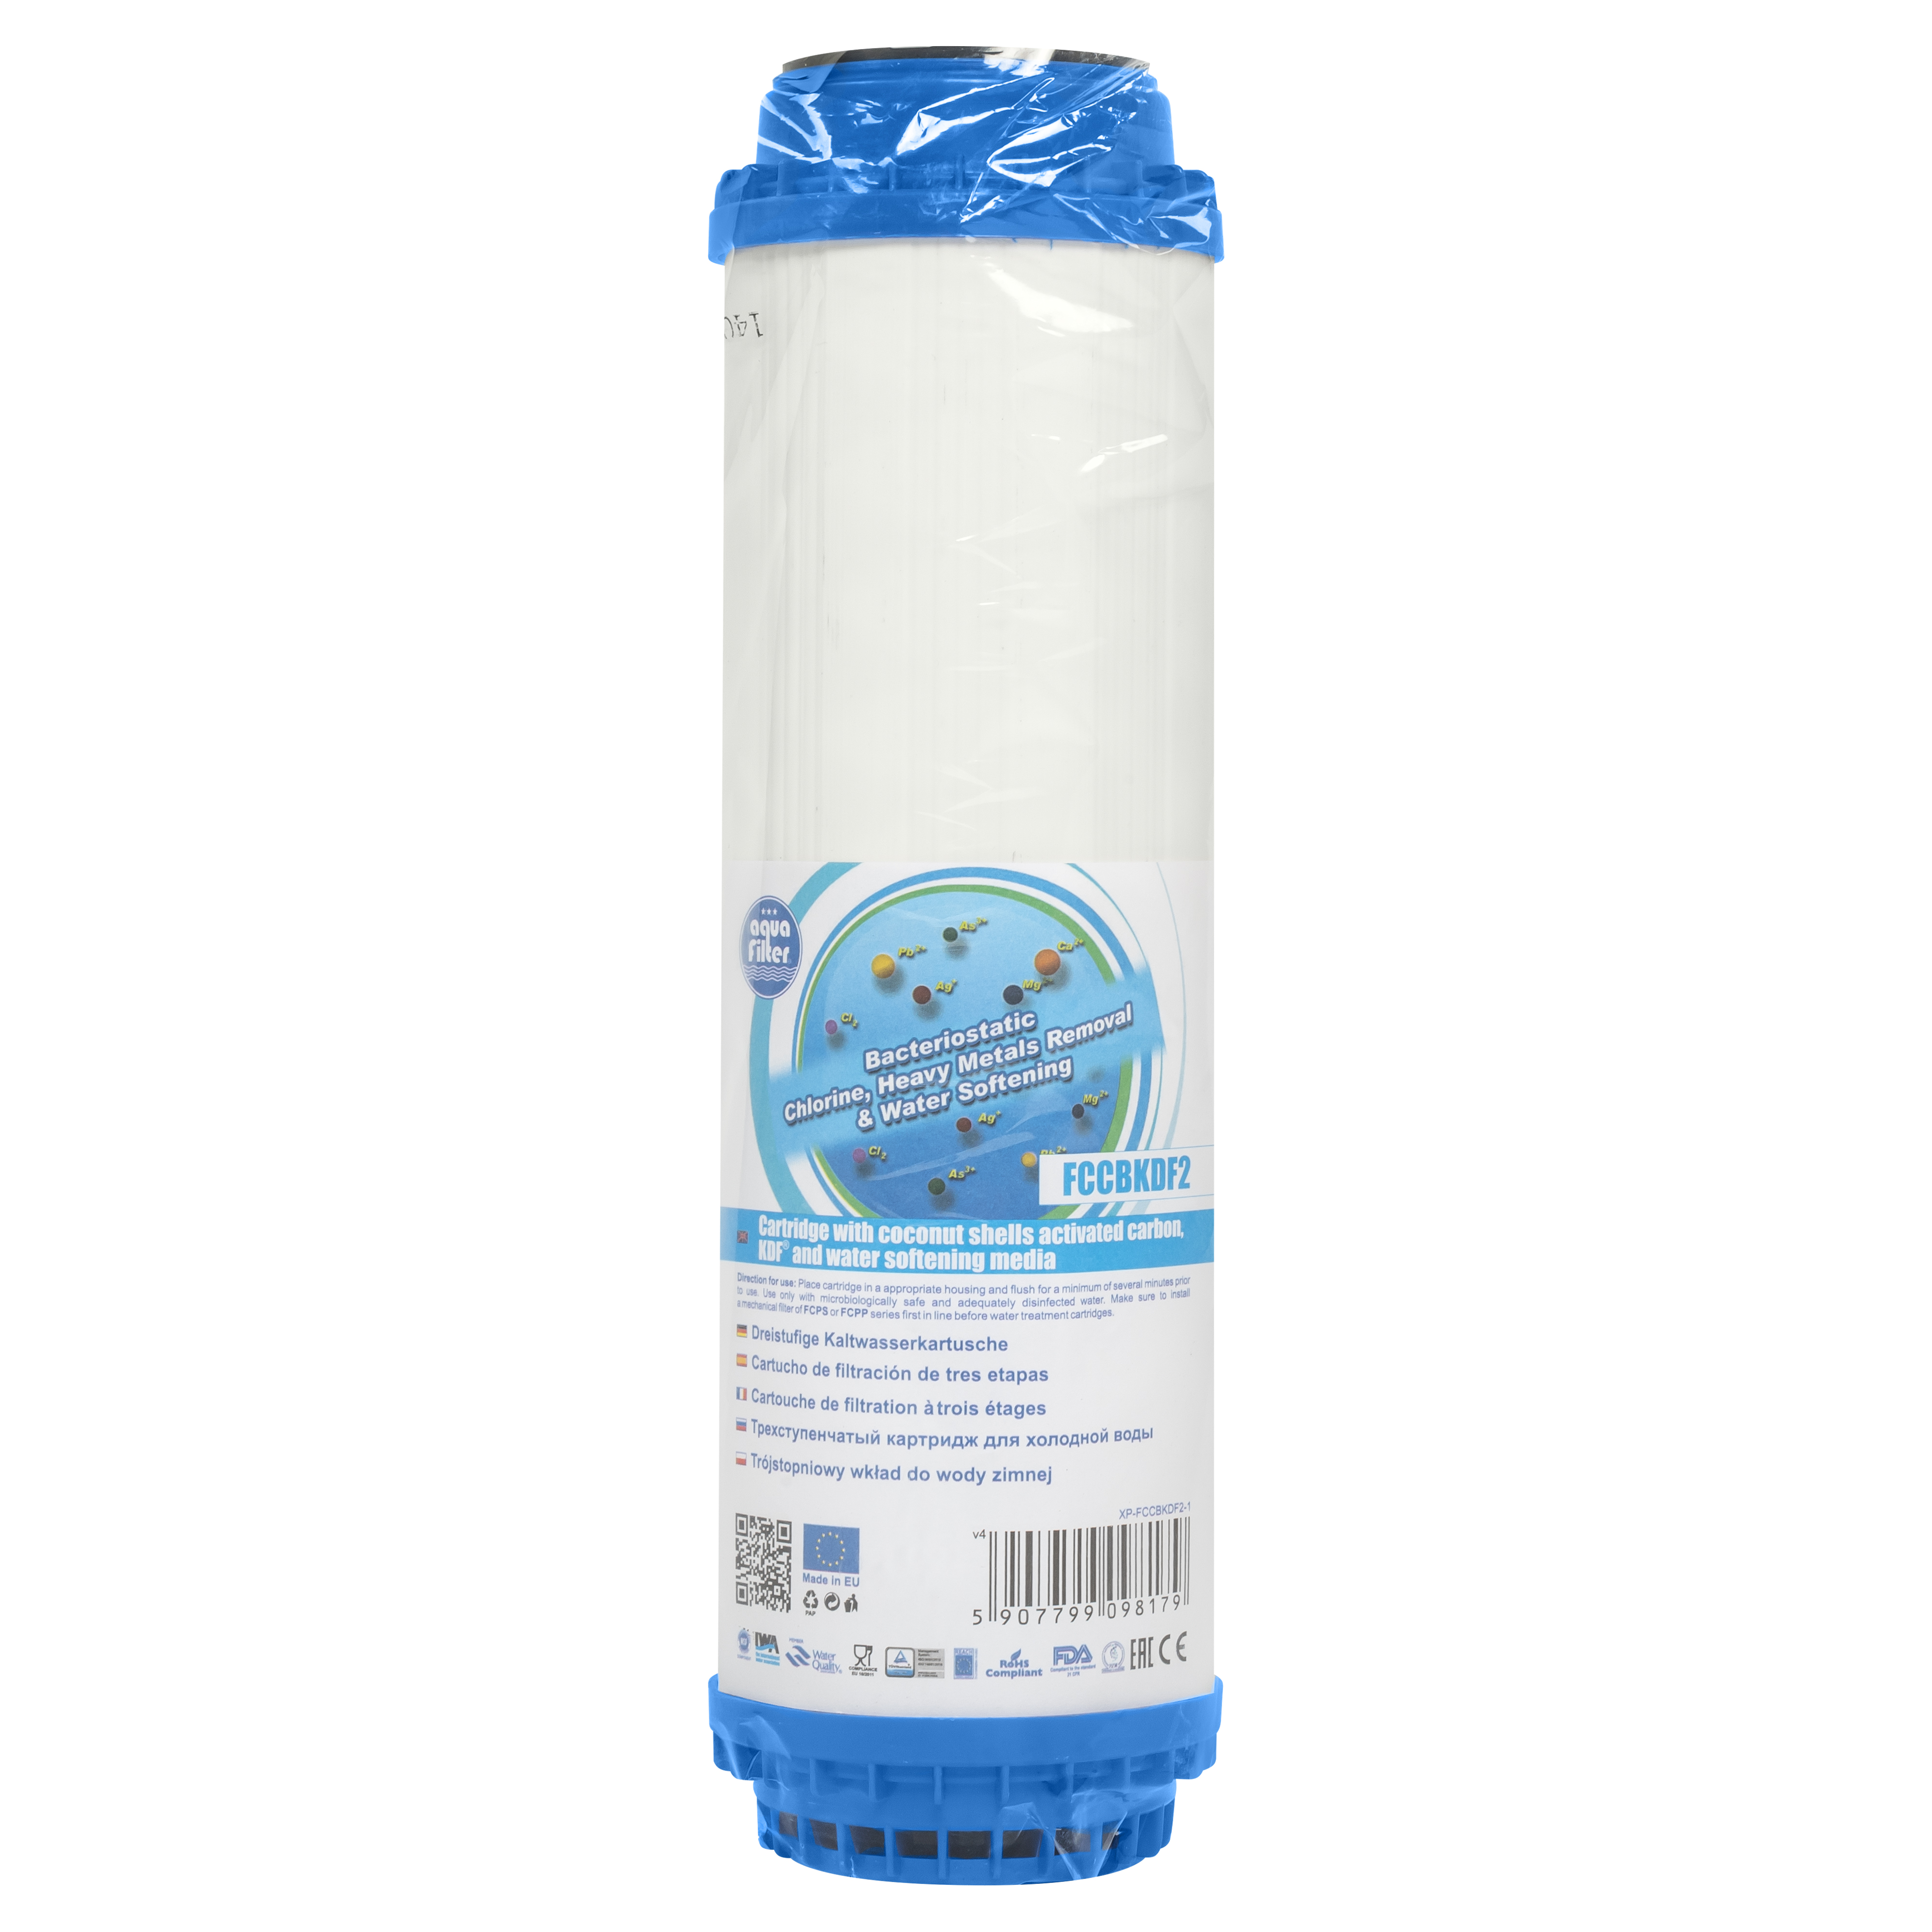 Картридж Aquafilter для холодной воды Aquafilter FCCBKDF2 (Уголь) 